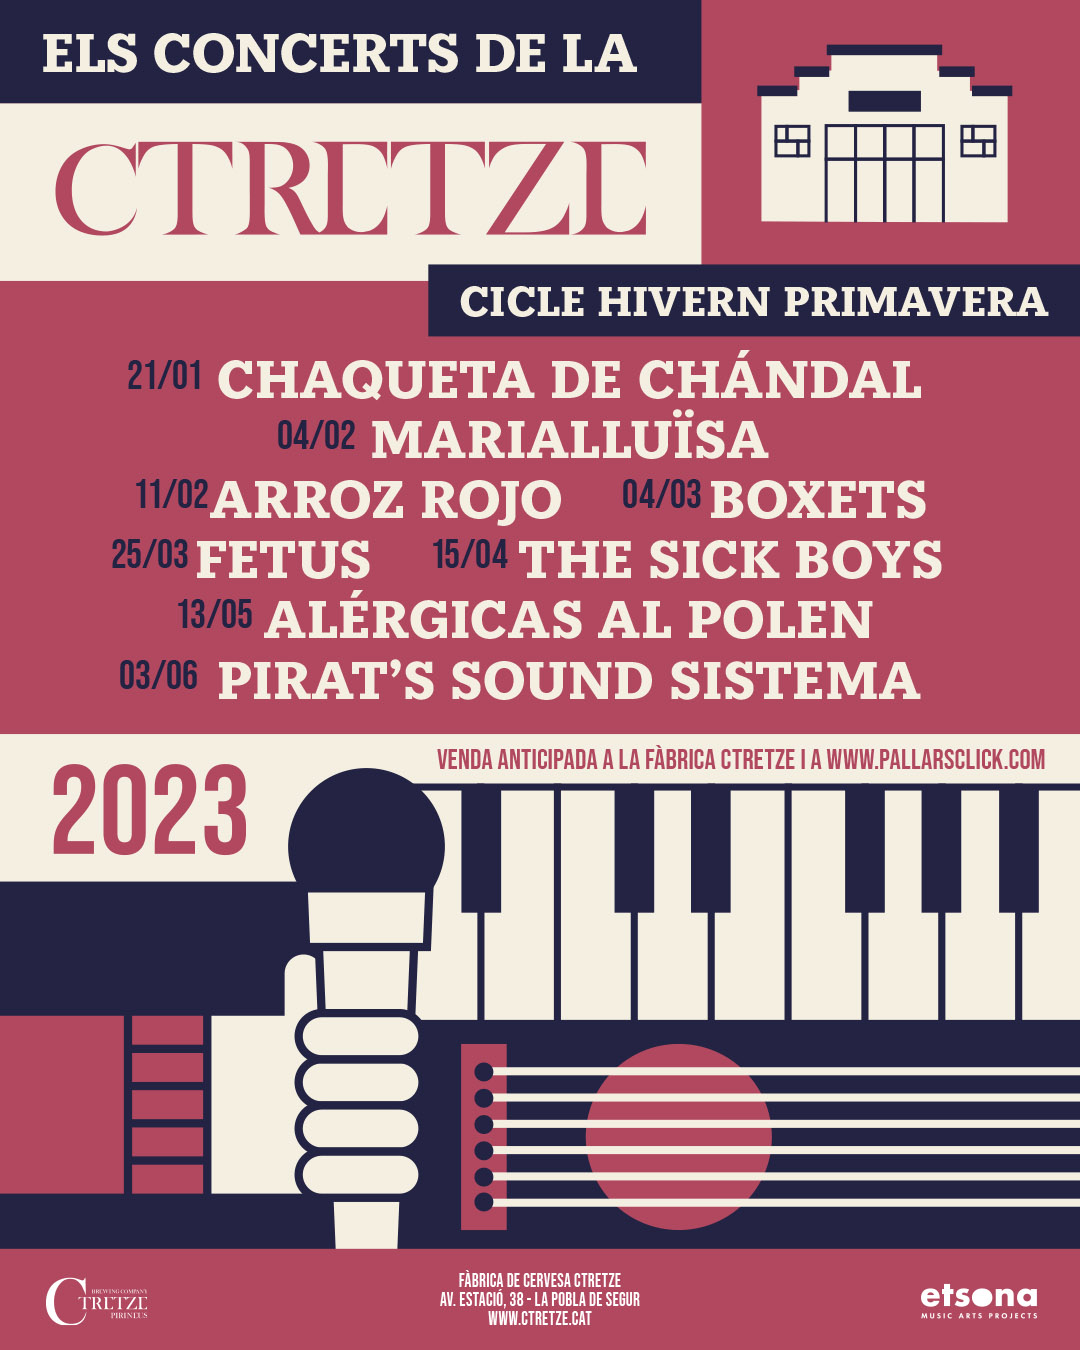 Esdeveniments I Excurcions Els Concerts De La Ctretze 2023 - Programació 2023 concerts de la Ctretze C13 La Pobla de Segur